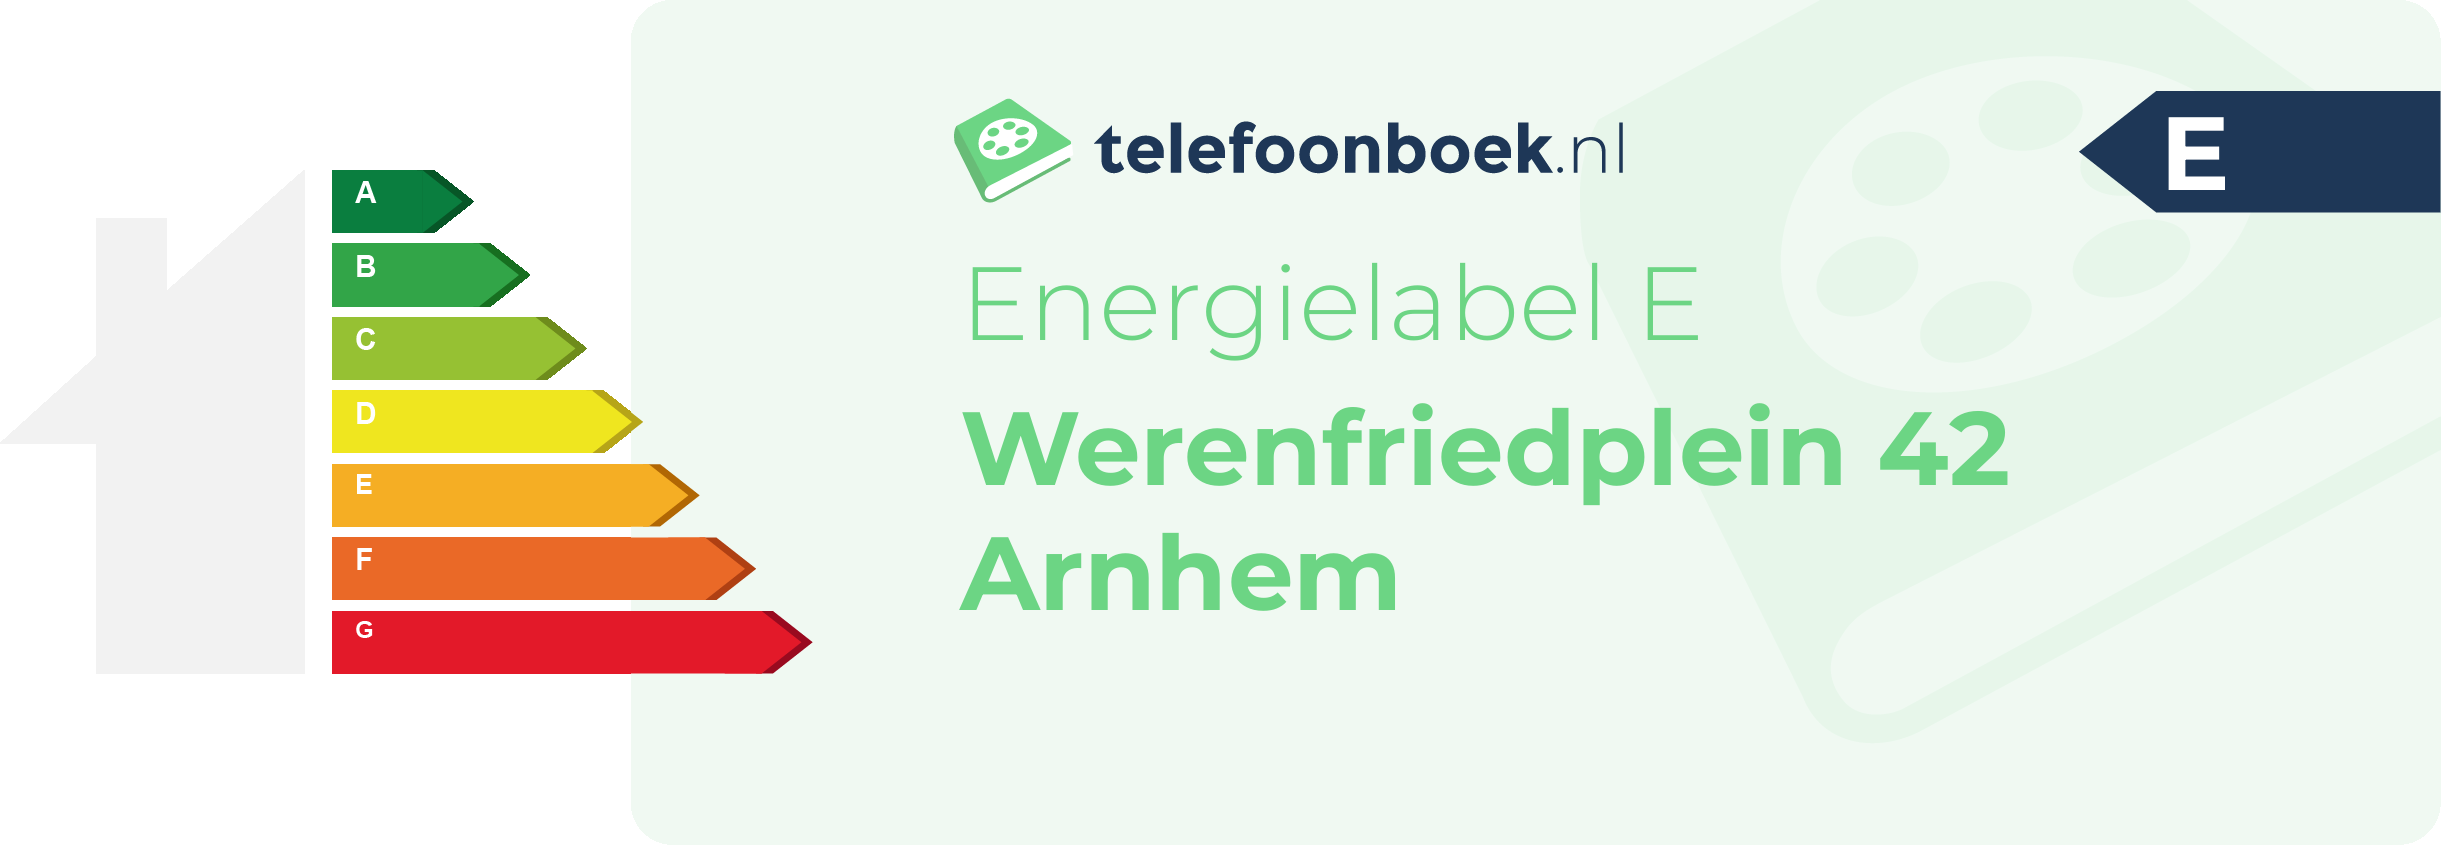 Energielabel Werenfriedplein 42 Arnhem